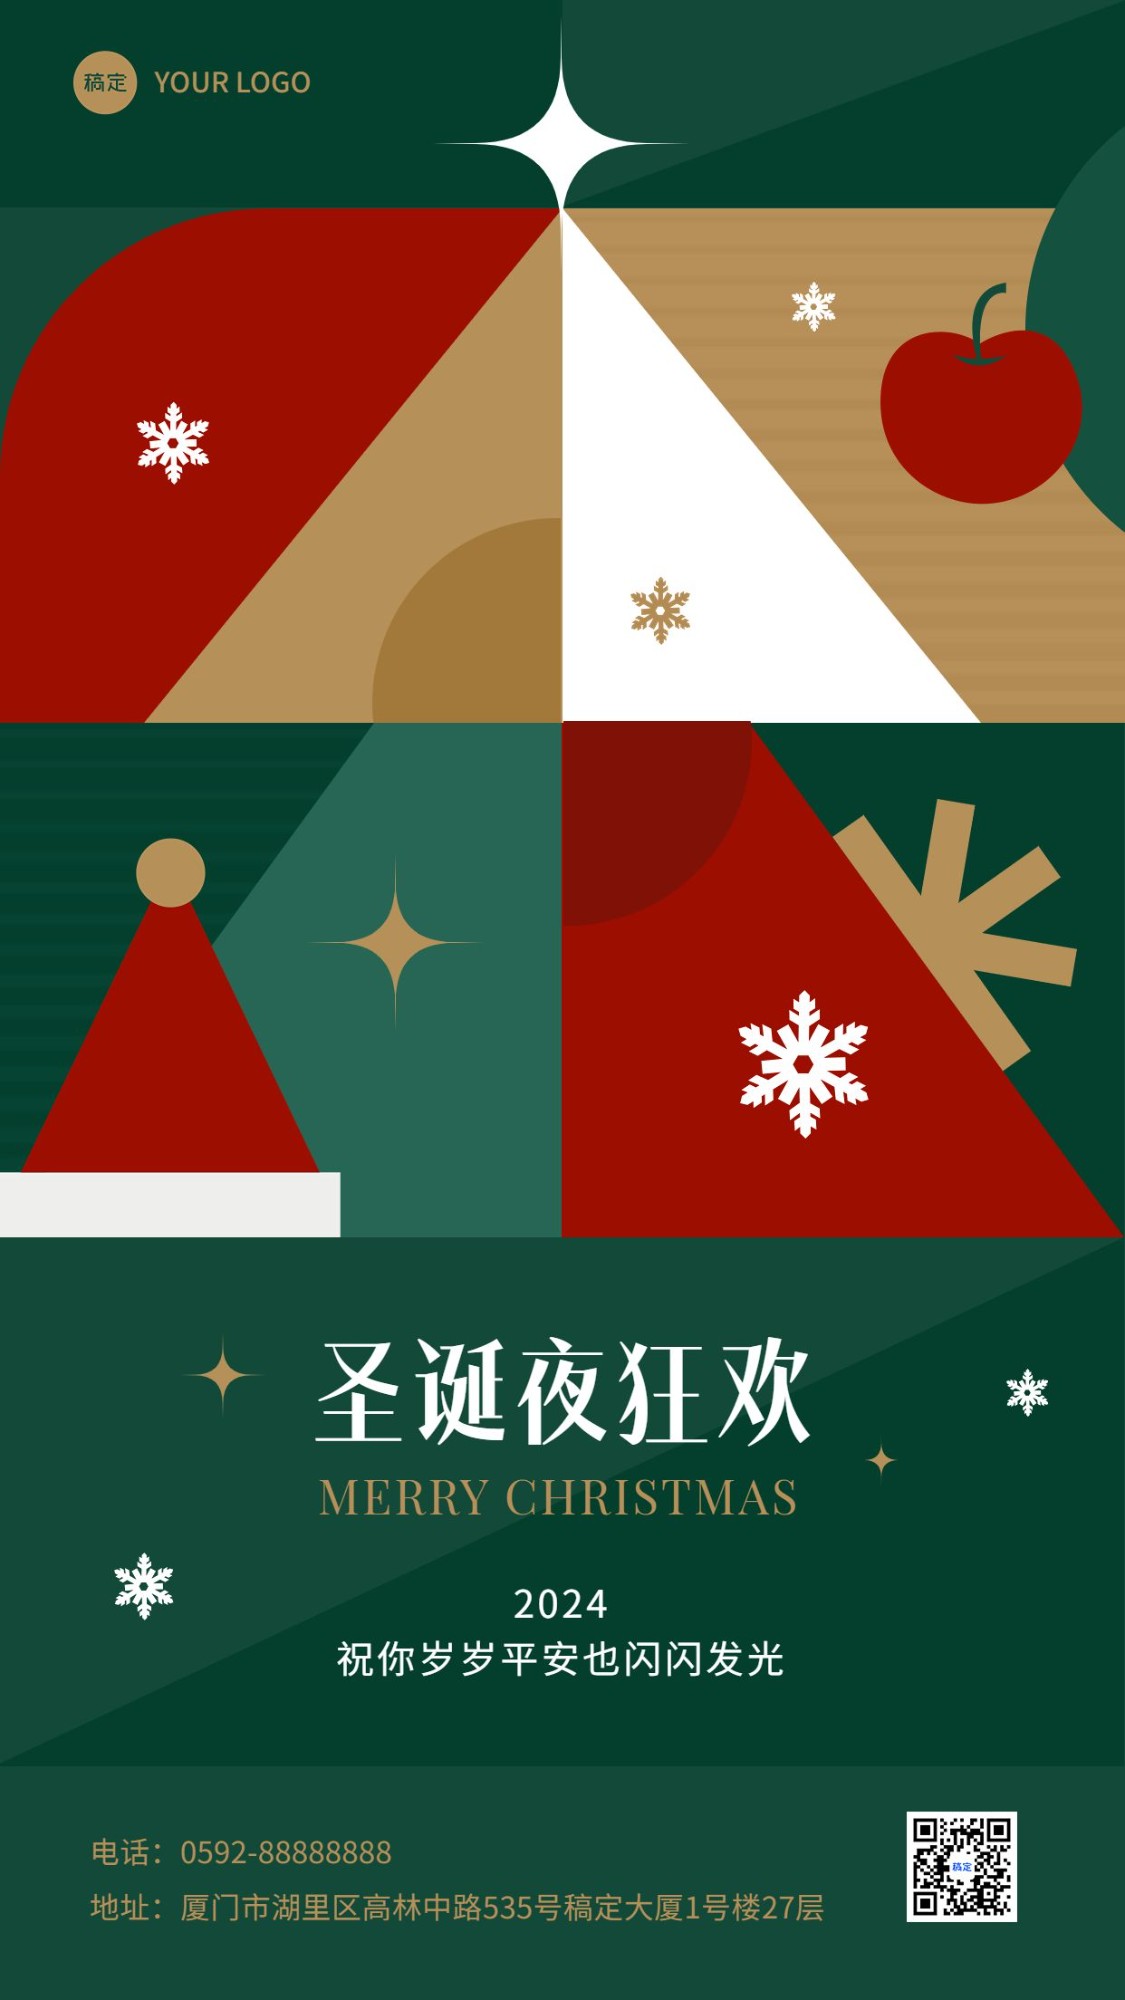 企业圣诞节节日祝福插画风贺卡手机海报